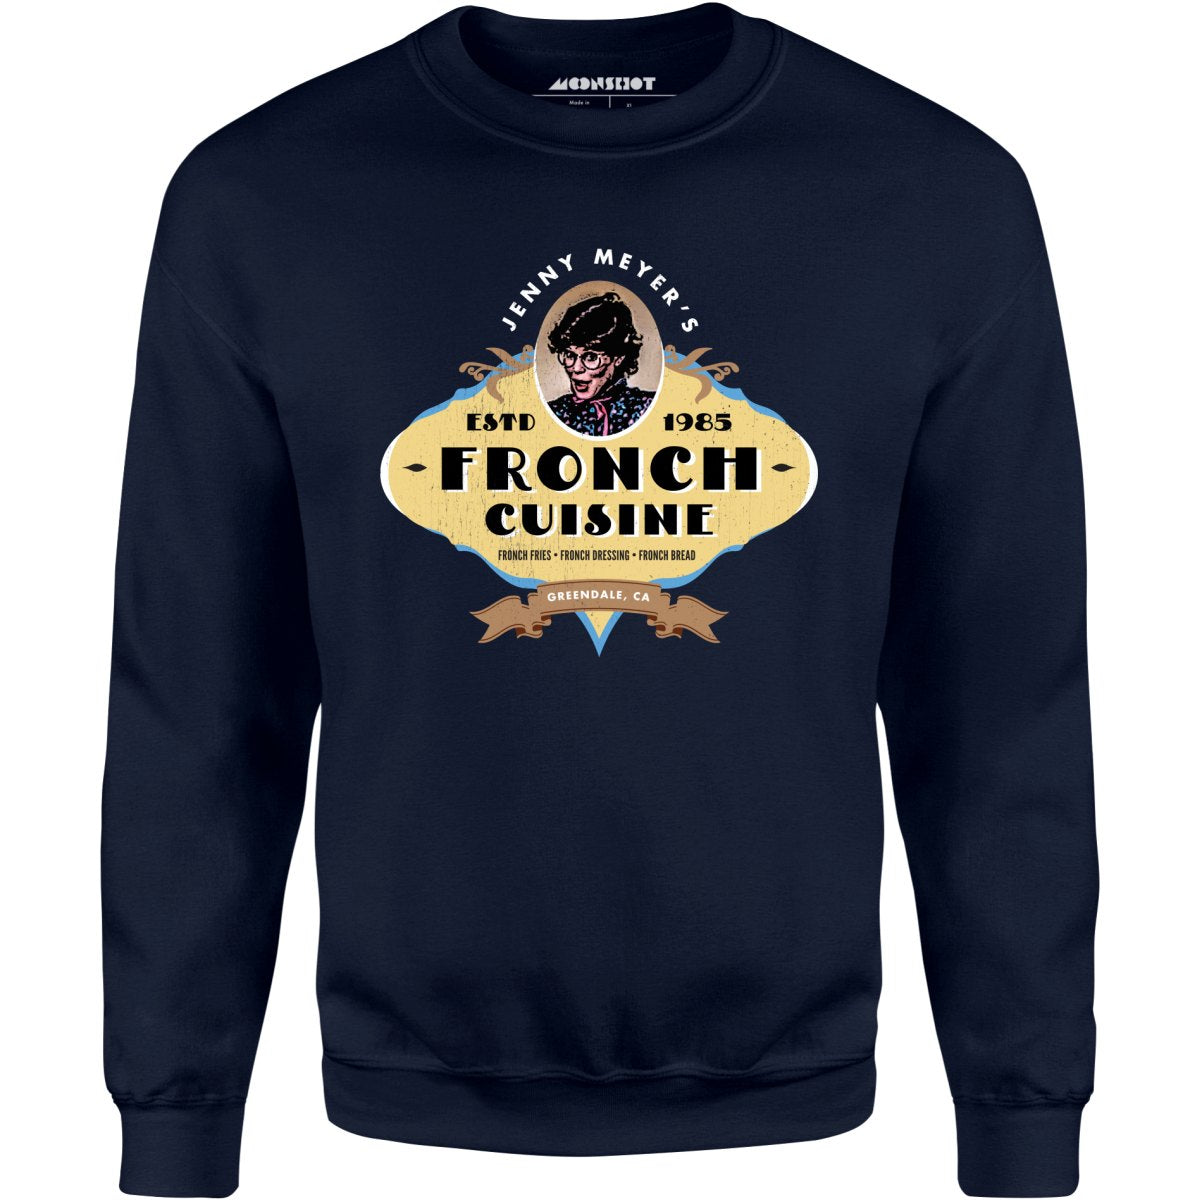 Jenny Meyers Fronch Cuisine - Unisex Sweatshirt